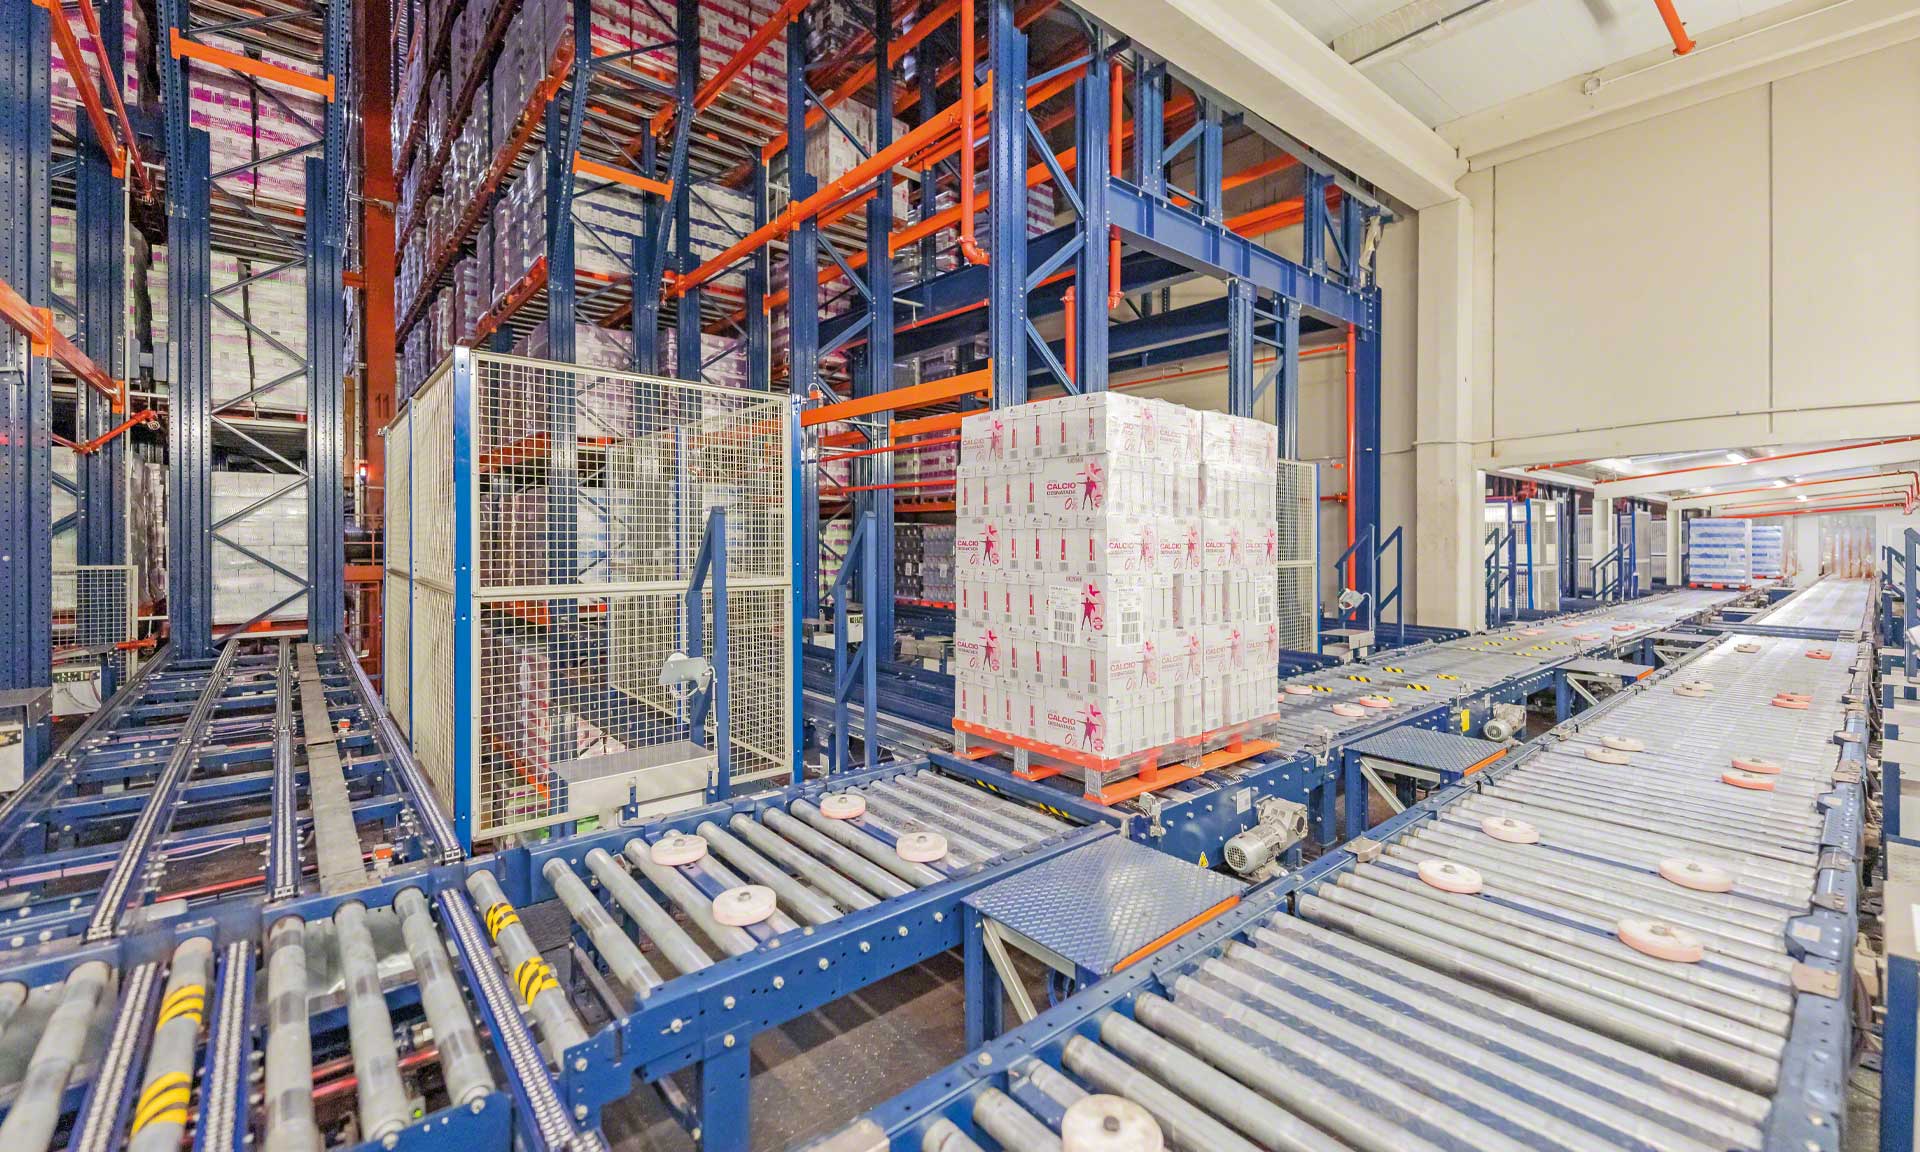 Esnelat automatisiert seine Logistik mit zwei automatischen Lagern für Milchprodukte